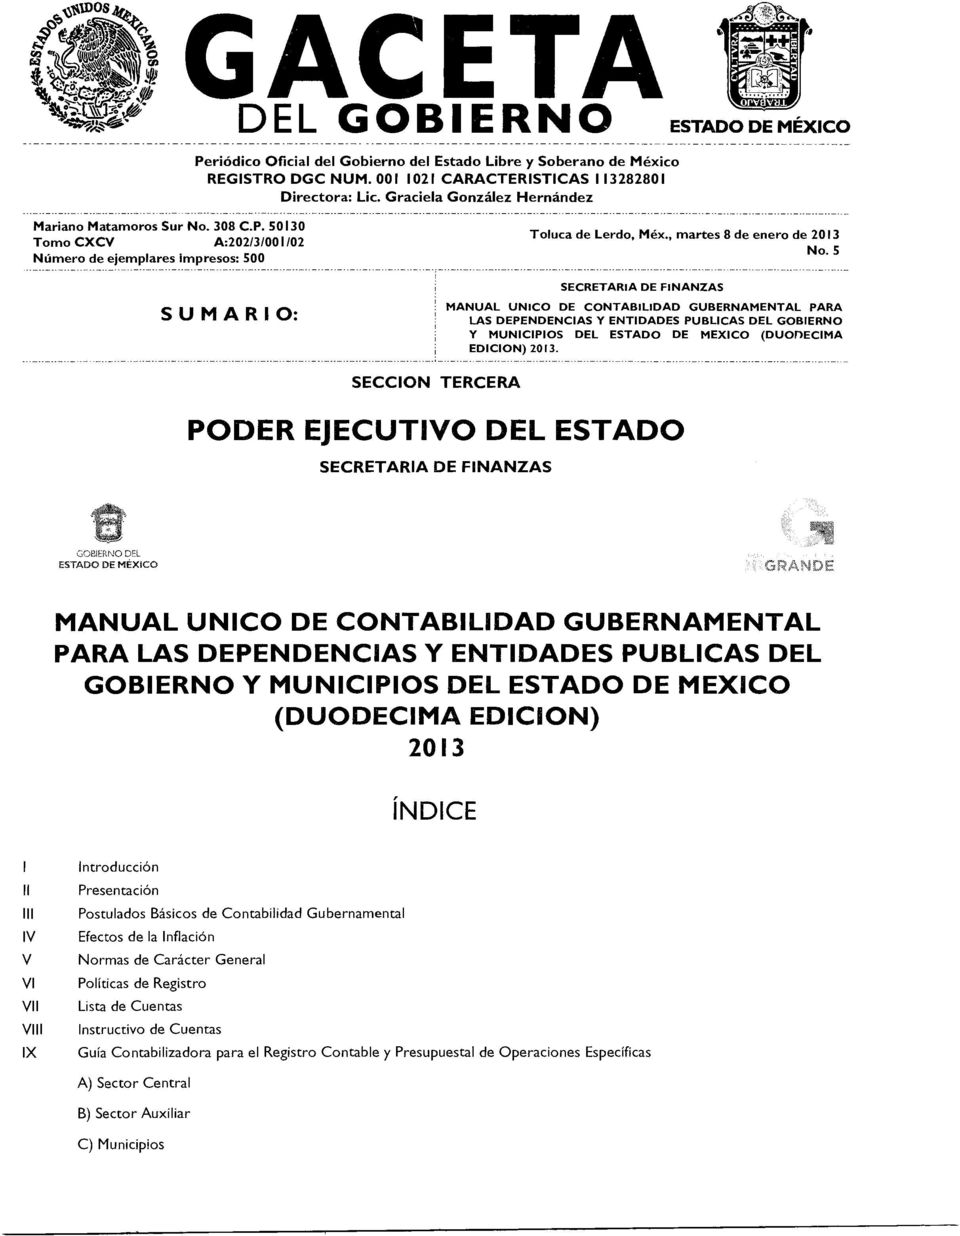 5 SECRETARIA DE FINANZAS SUMARIO: MANUAL UNICO DE CONTABILIDAD GUBERNAMENTAL PARA LAS DEPENDENCIAS Y ENTIDADES PUBLICAS DEL GOBIERNO Y MUNICIPIOS DEL ESTADO DE MEXICO (DUODECIMA EDICION) 2013.